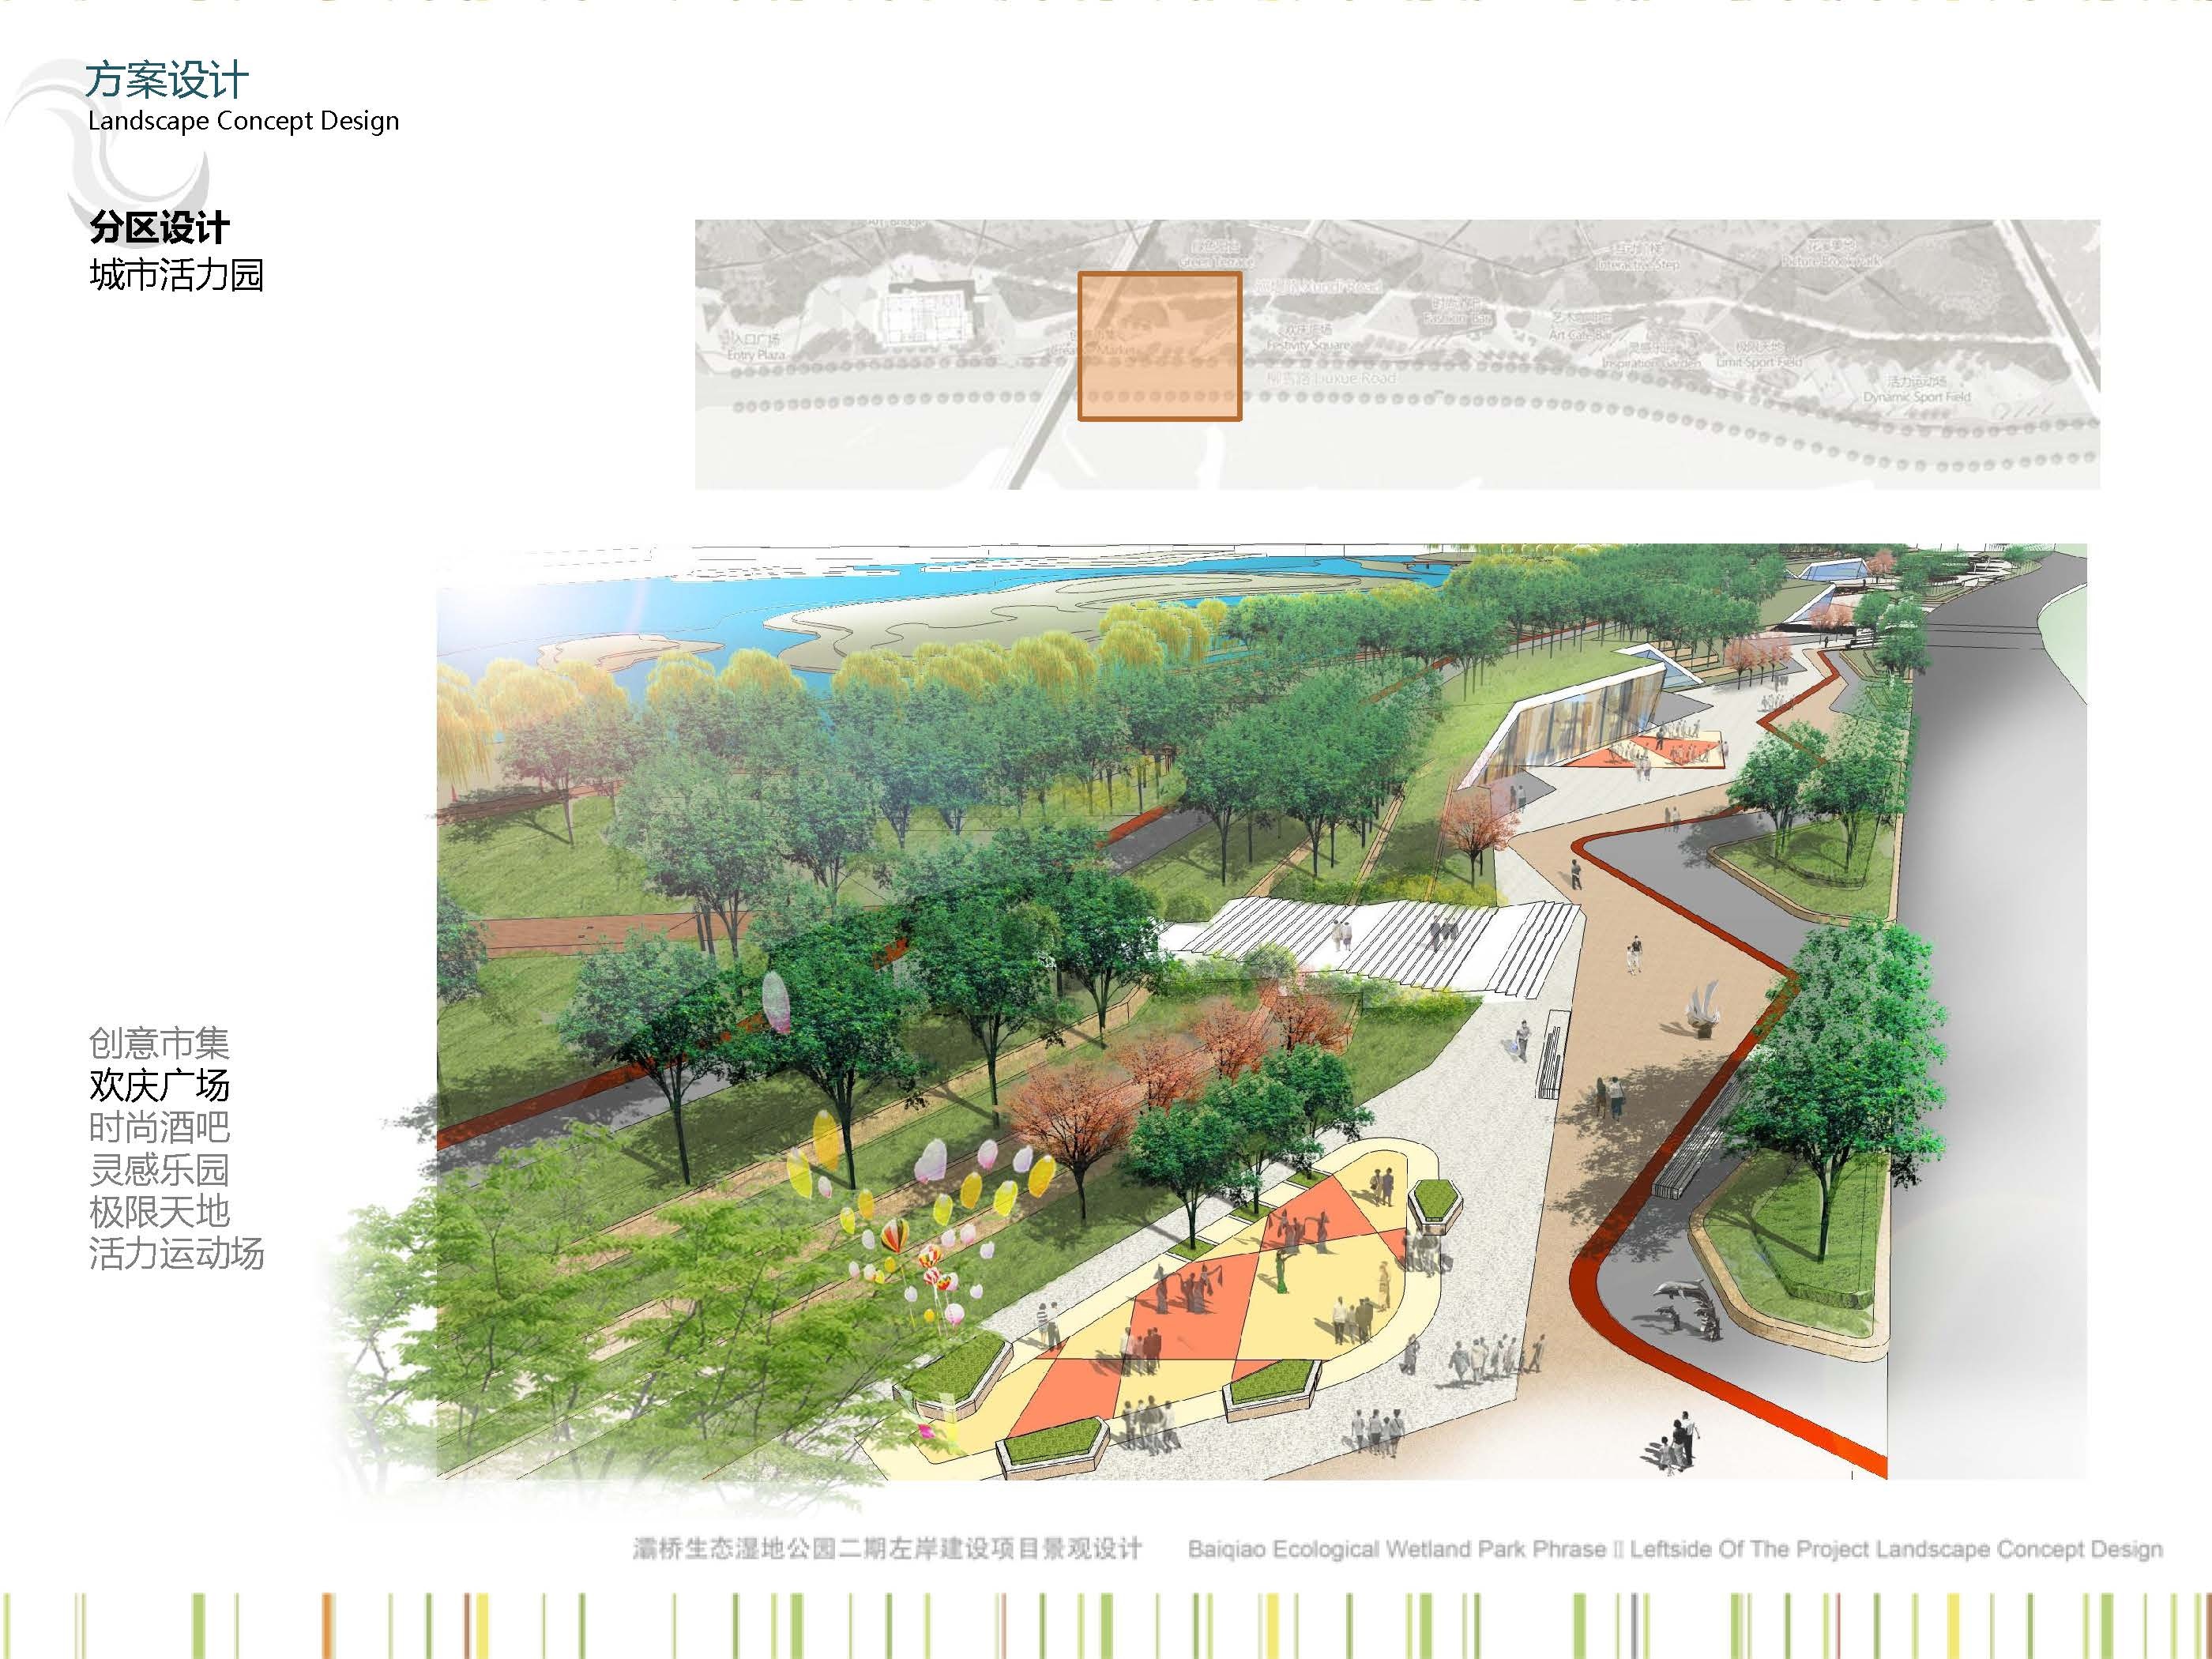 [奥雅]灞桥生态湿地公园二期左岸景观设计|UI|游